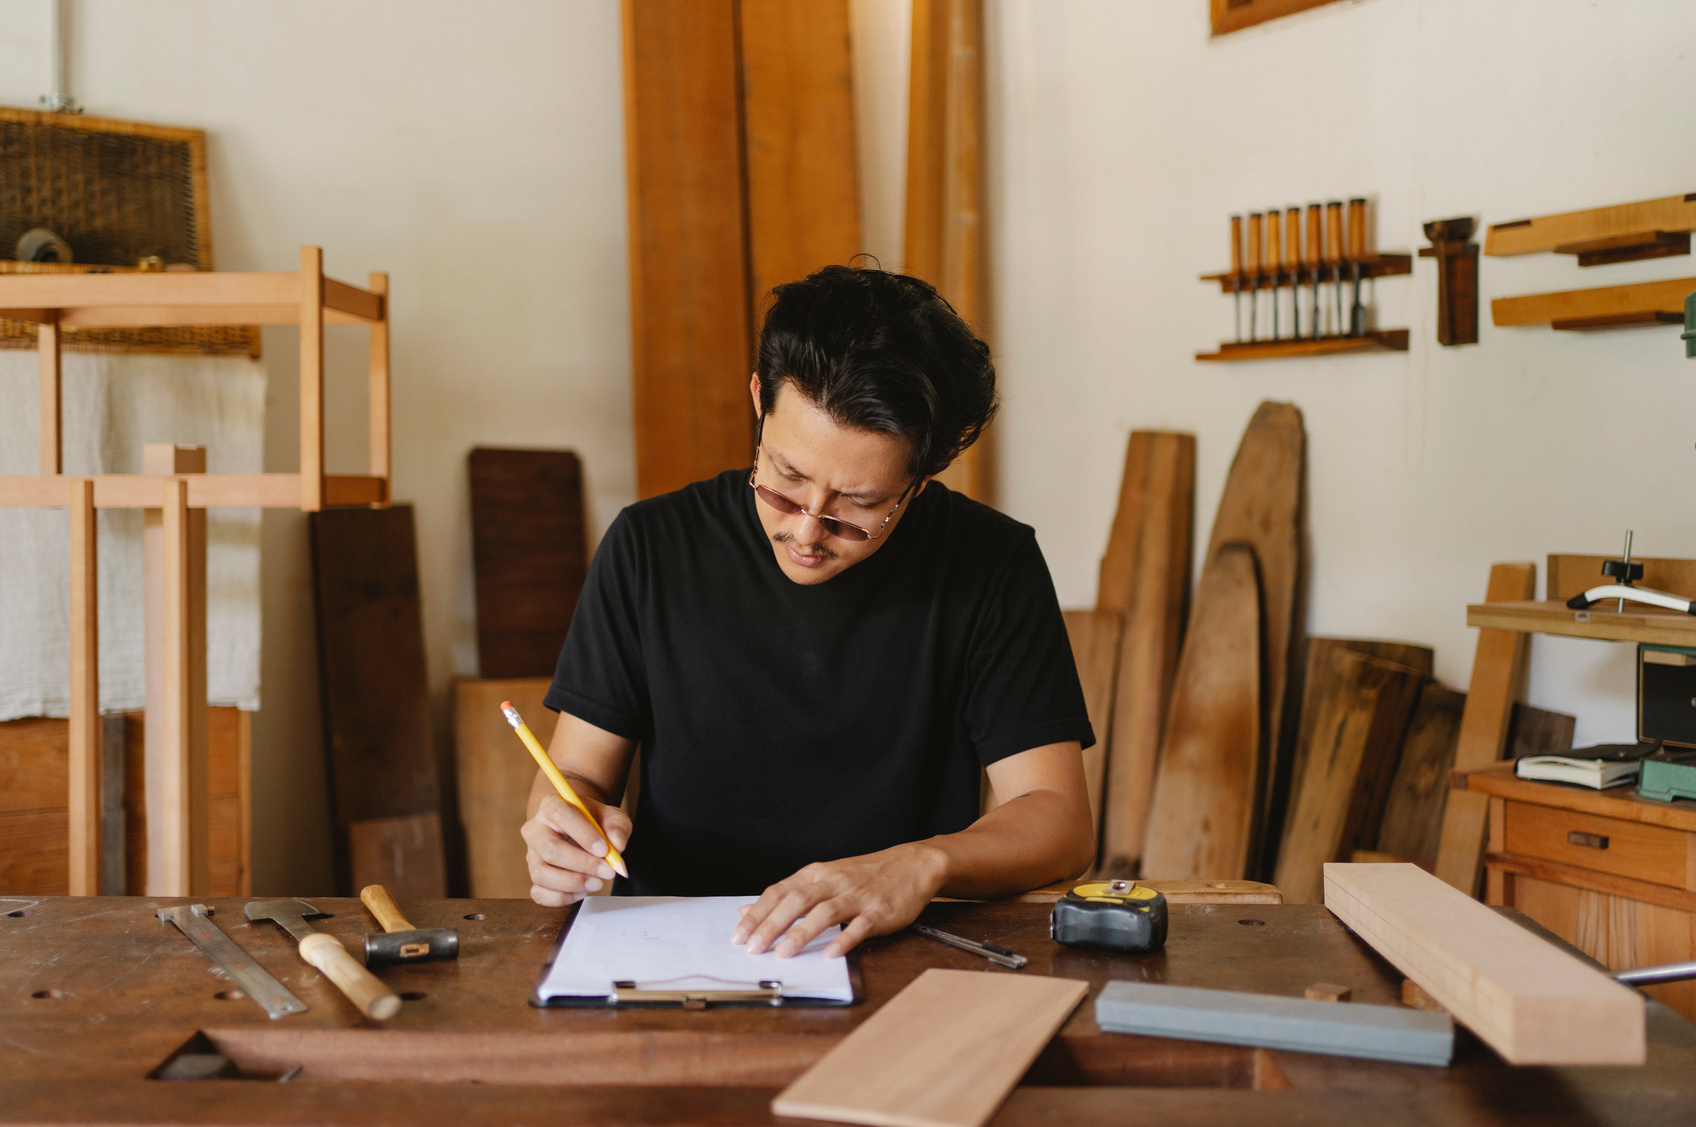 Focused ethnic craftsman working in creative carpenter studio